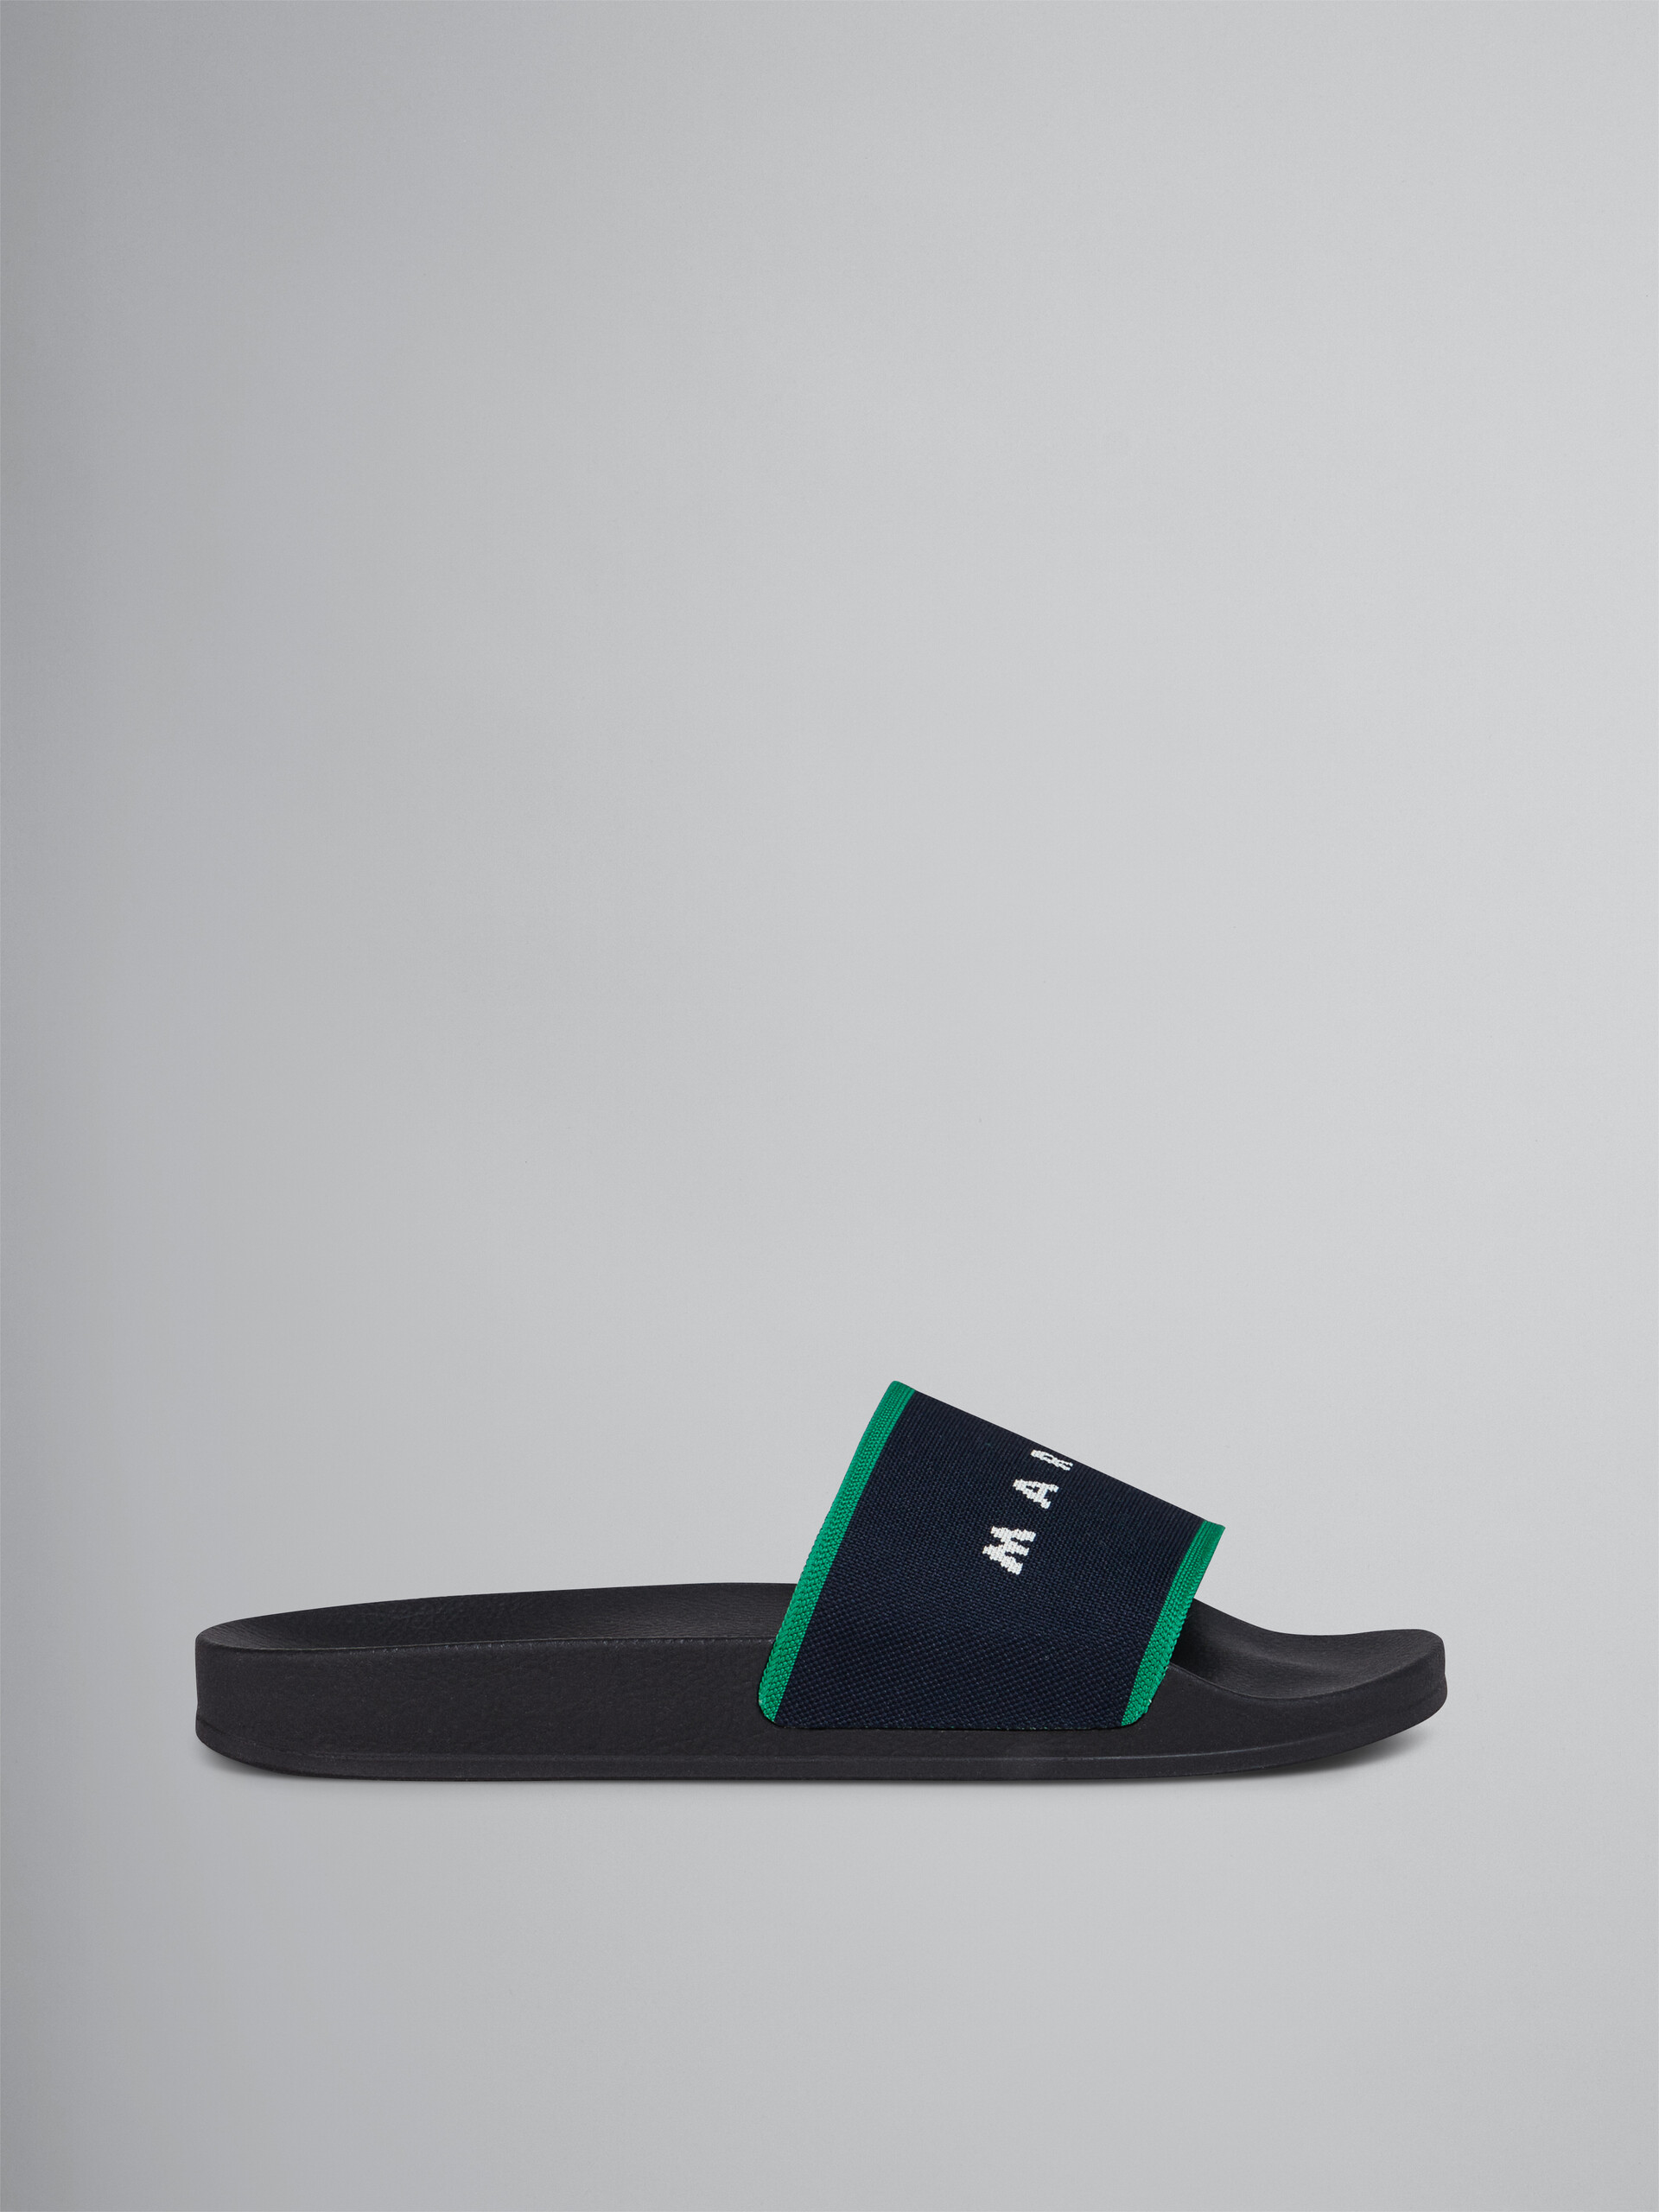 Blue black logo jacquard rubber slide - Sandals - Image 1